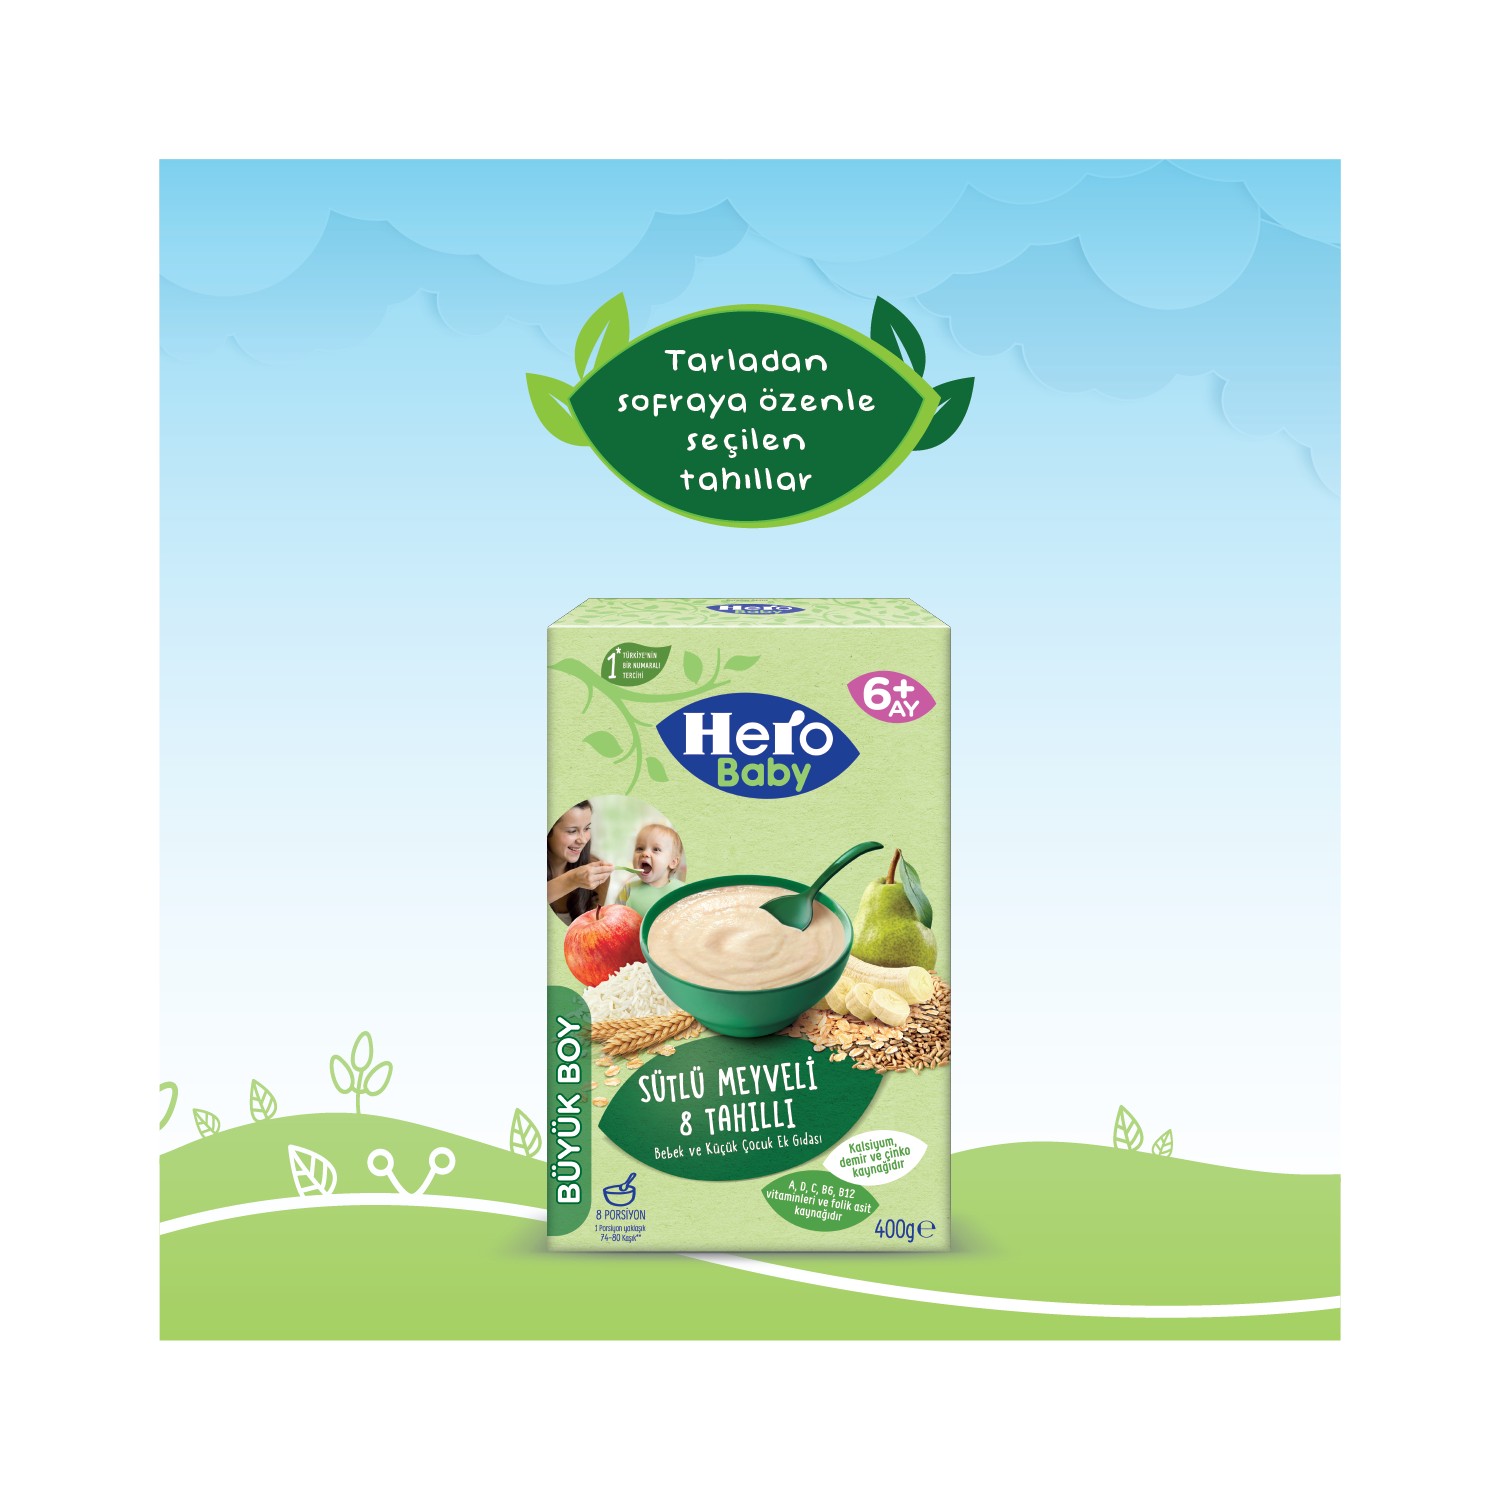 Hero Baby Sütlü Meyveli 8 Tahıllı Kaşık Mama 400 gr 4'lü Paket